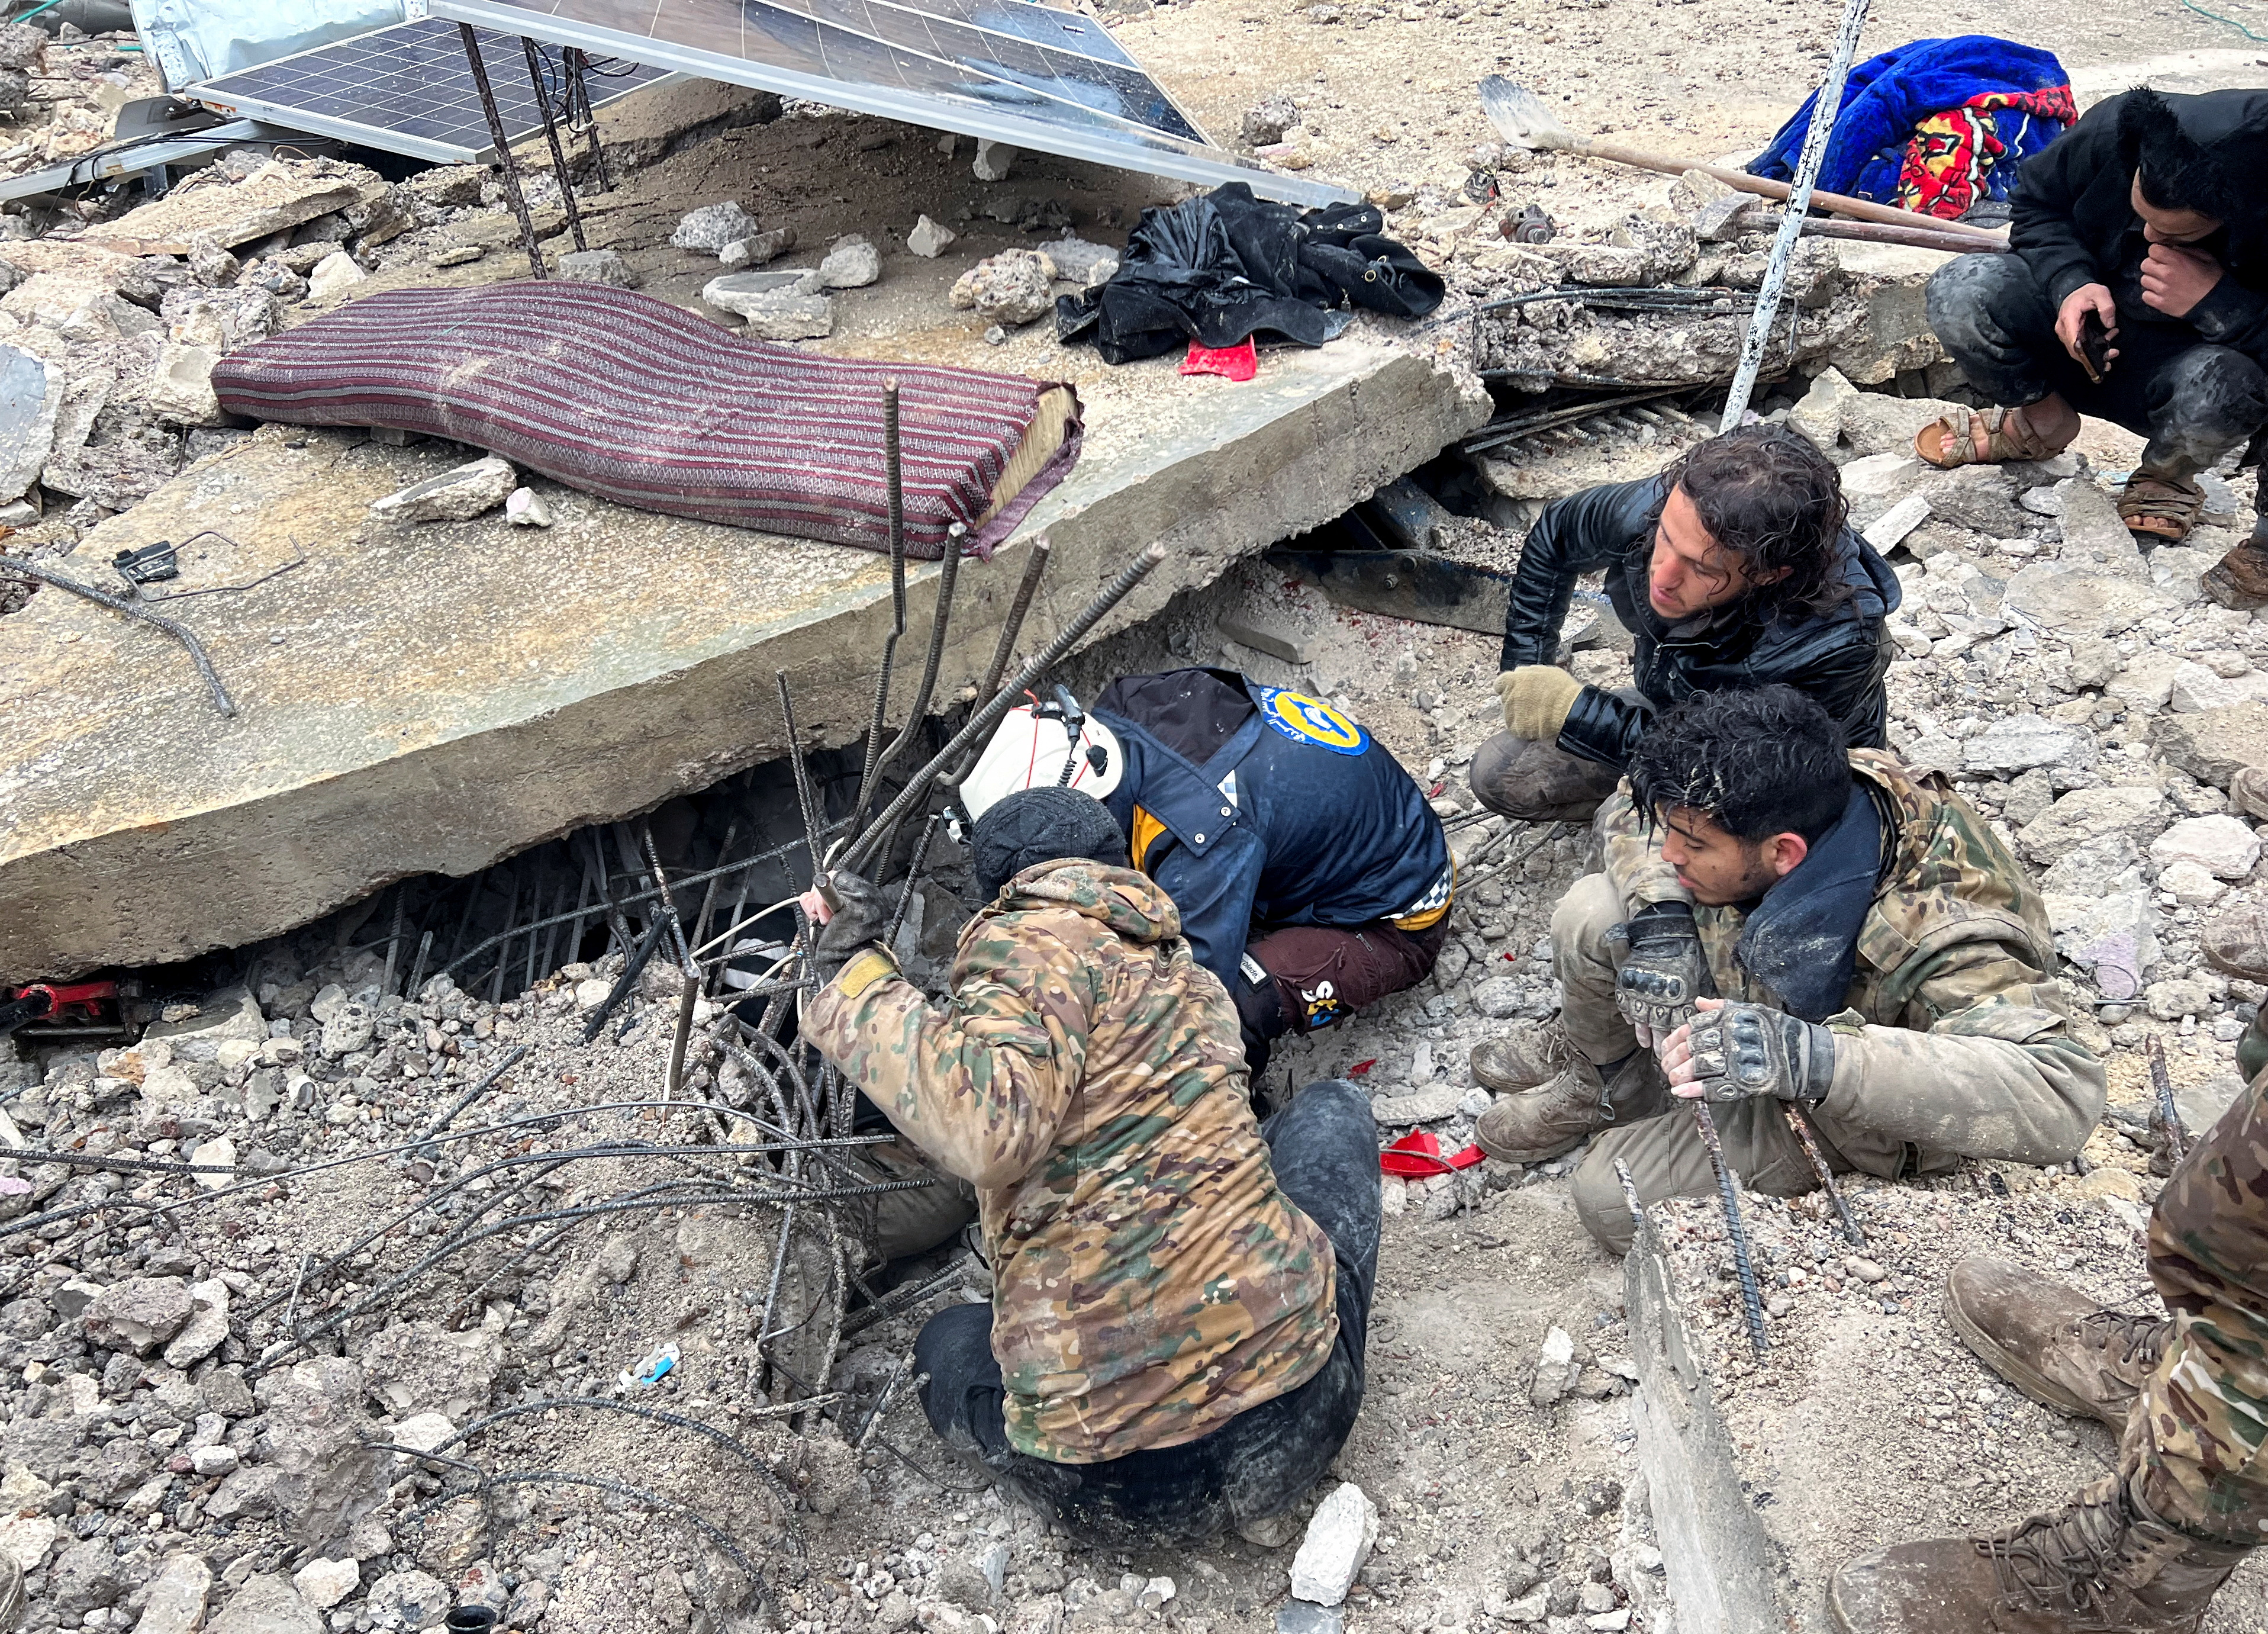 Los rescatistas buscan sobrevivientes bajo los escombros en la ciudad rebelde de Jandaris, Siria.
